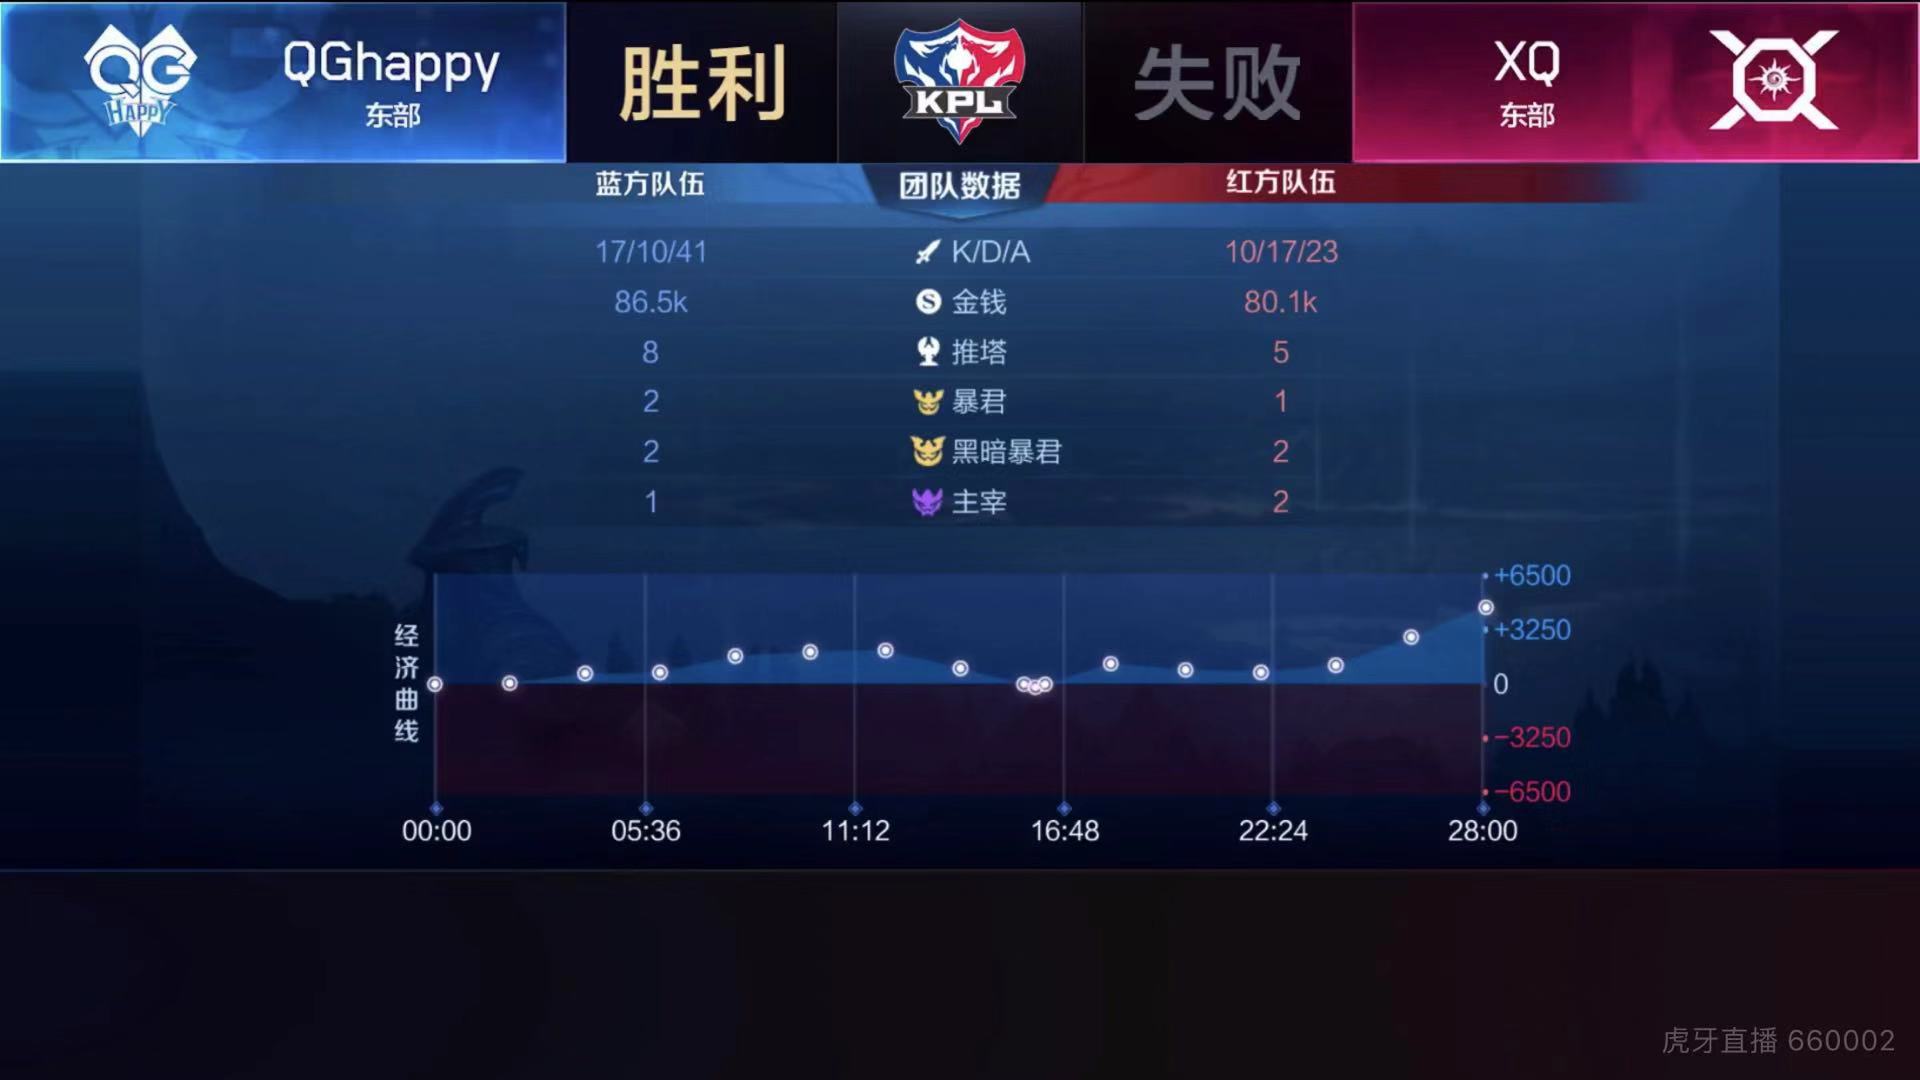 [战报] XQ鏖战五局 成功终止QGhappy连胜步伐